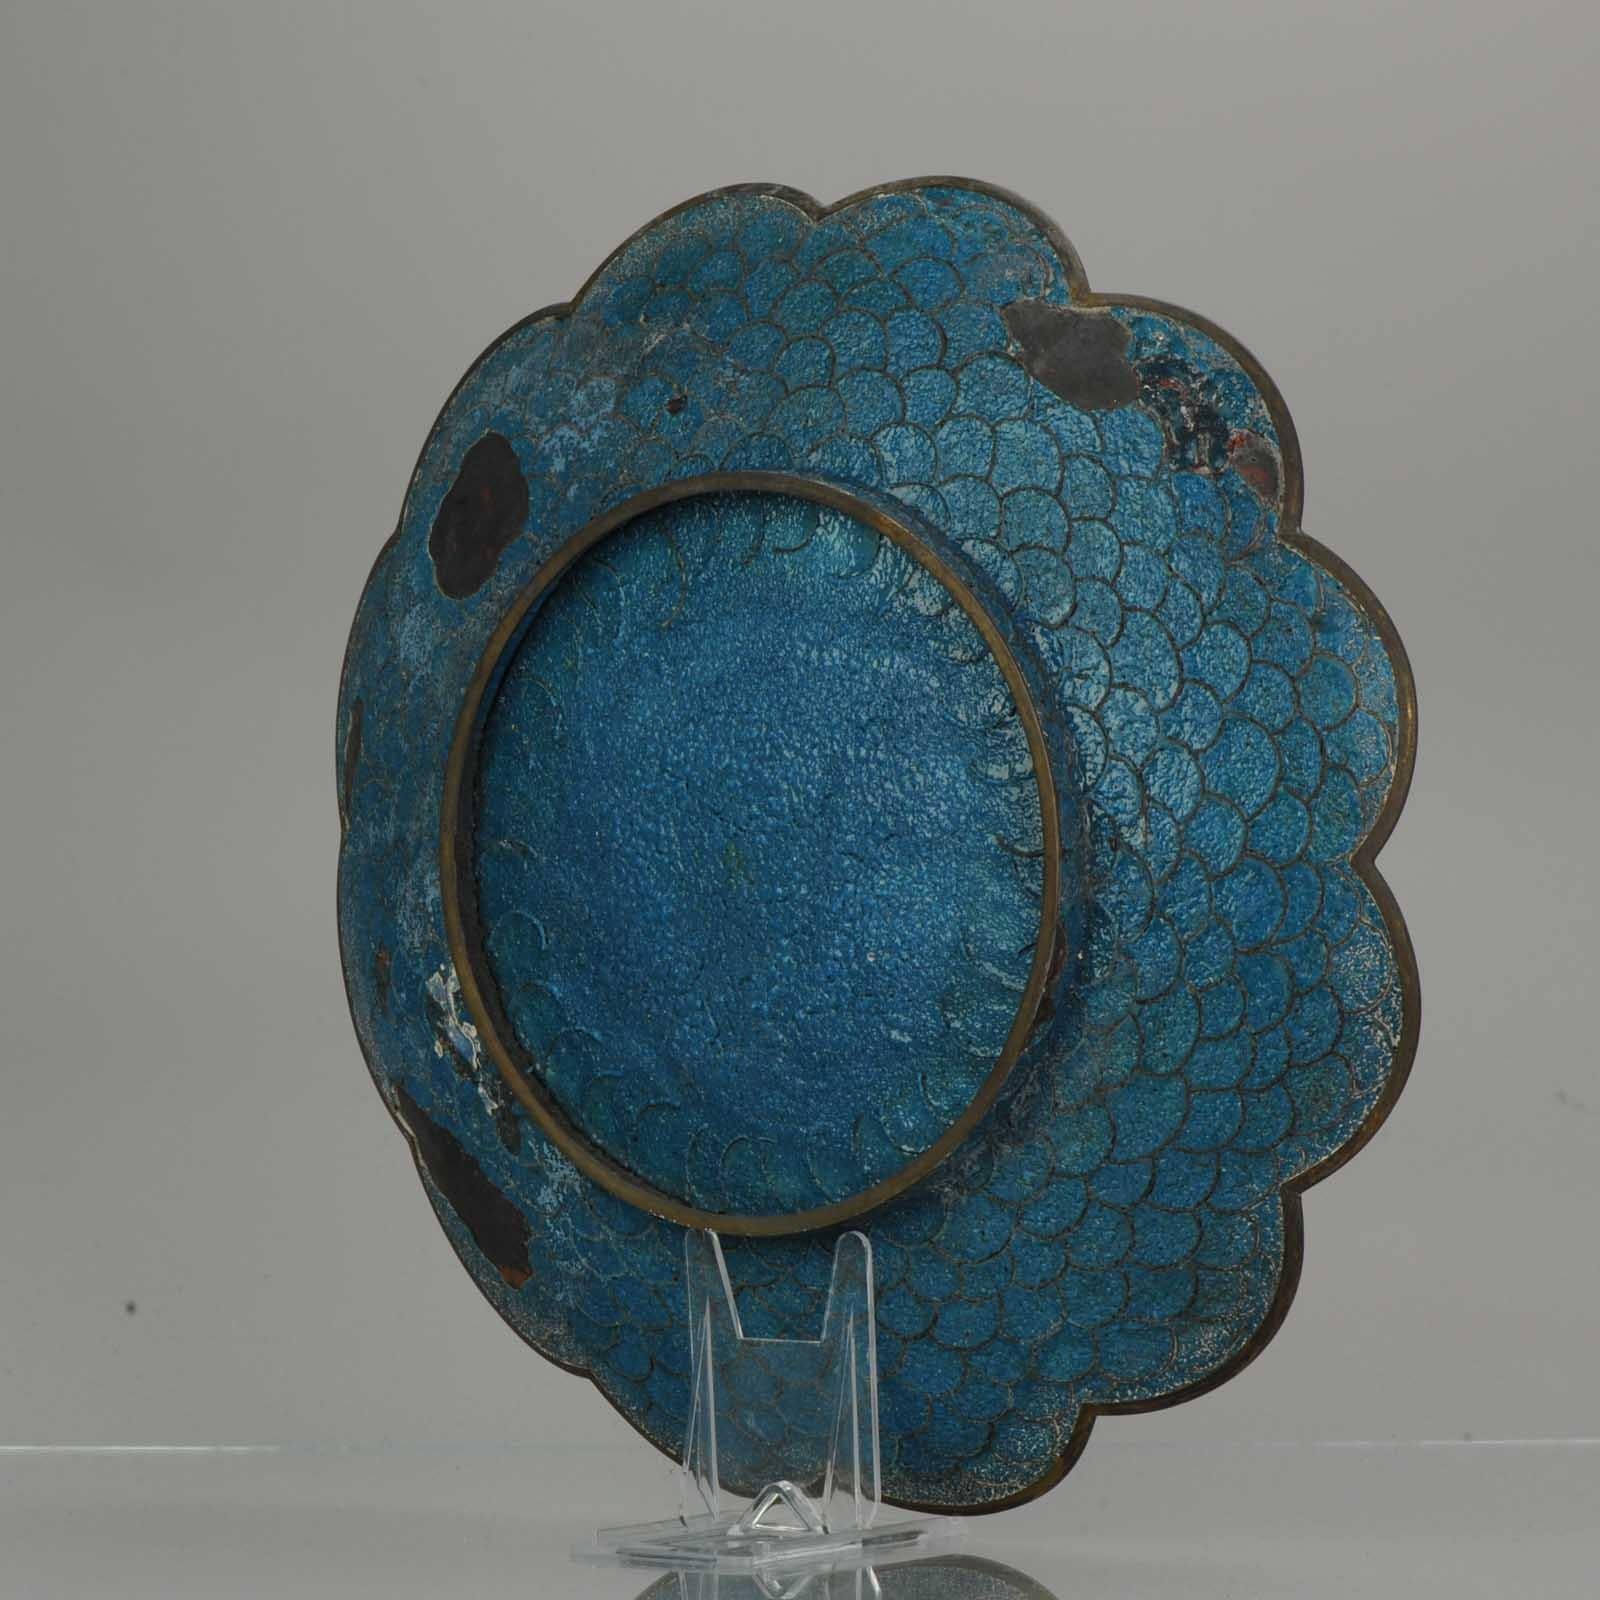 Top and Large Antique Bronze/Copper Cloisonné Dish Plate Japan 19th Century Fan For Sale 3